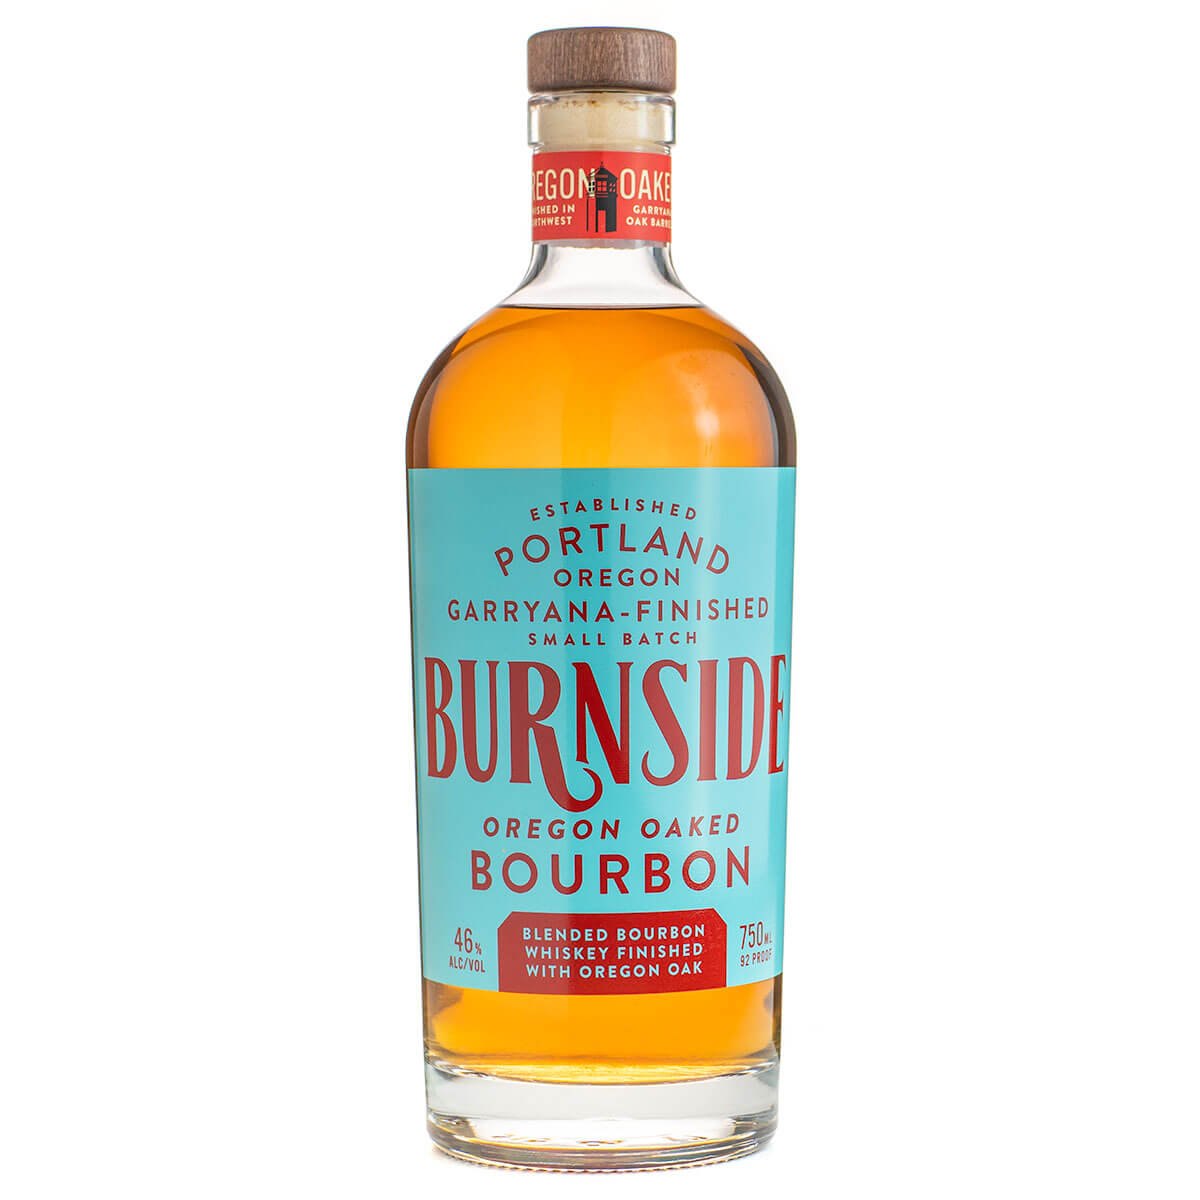 Burnside Oregon Oaked Bourbon bottle